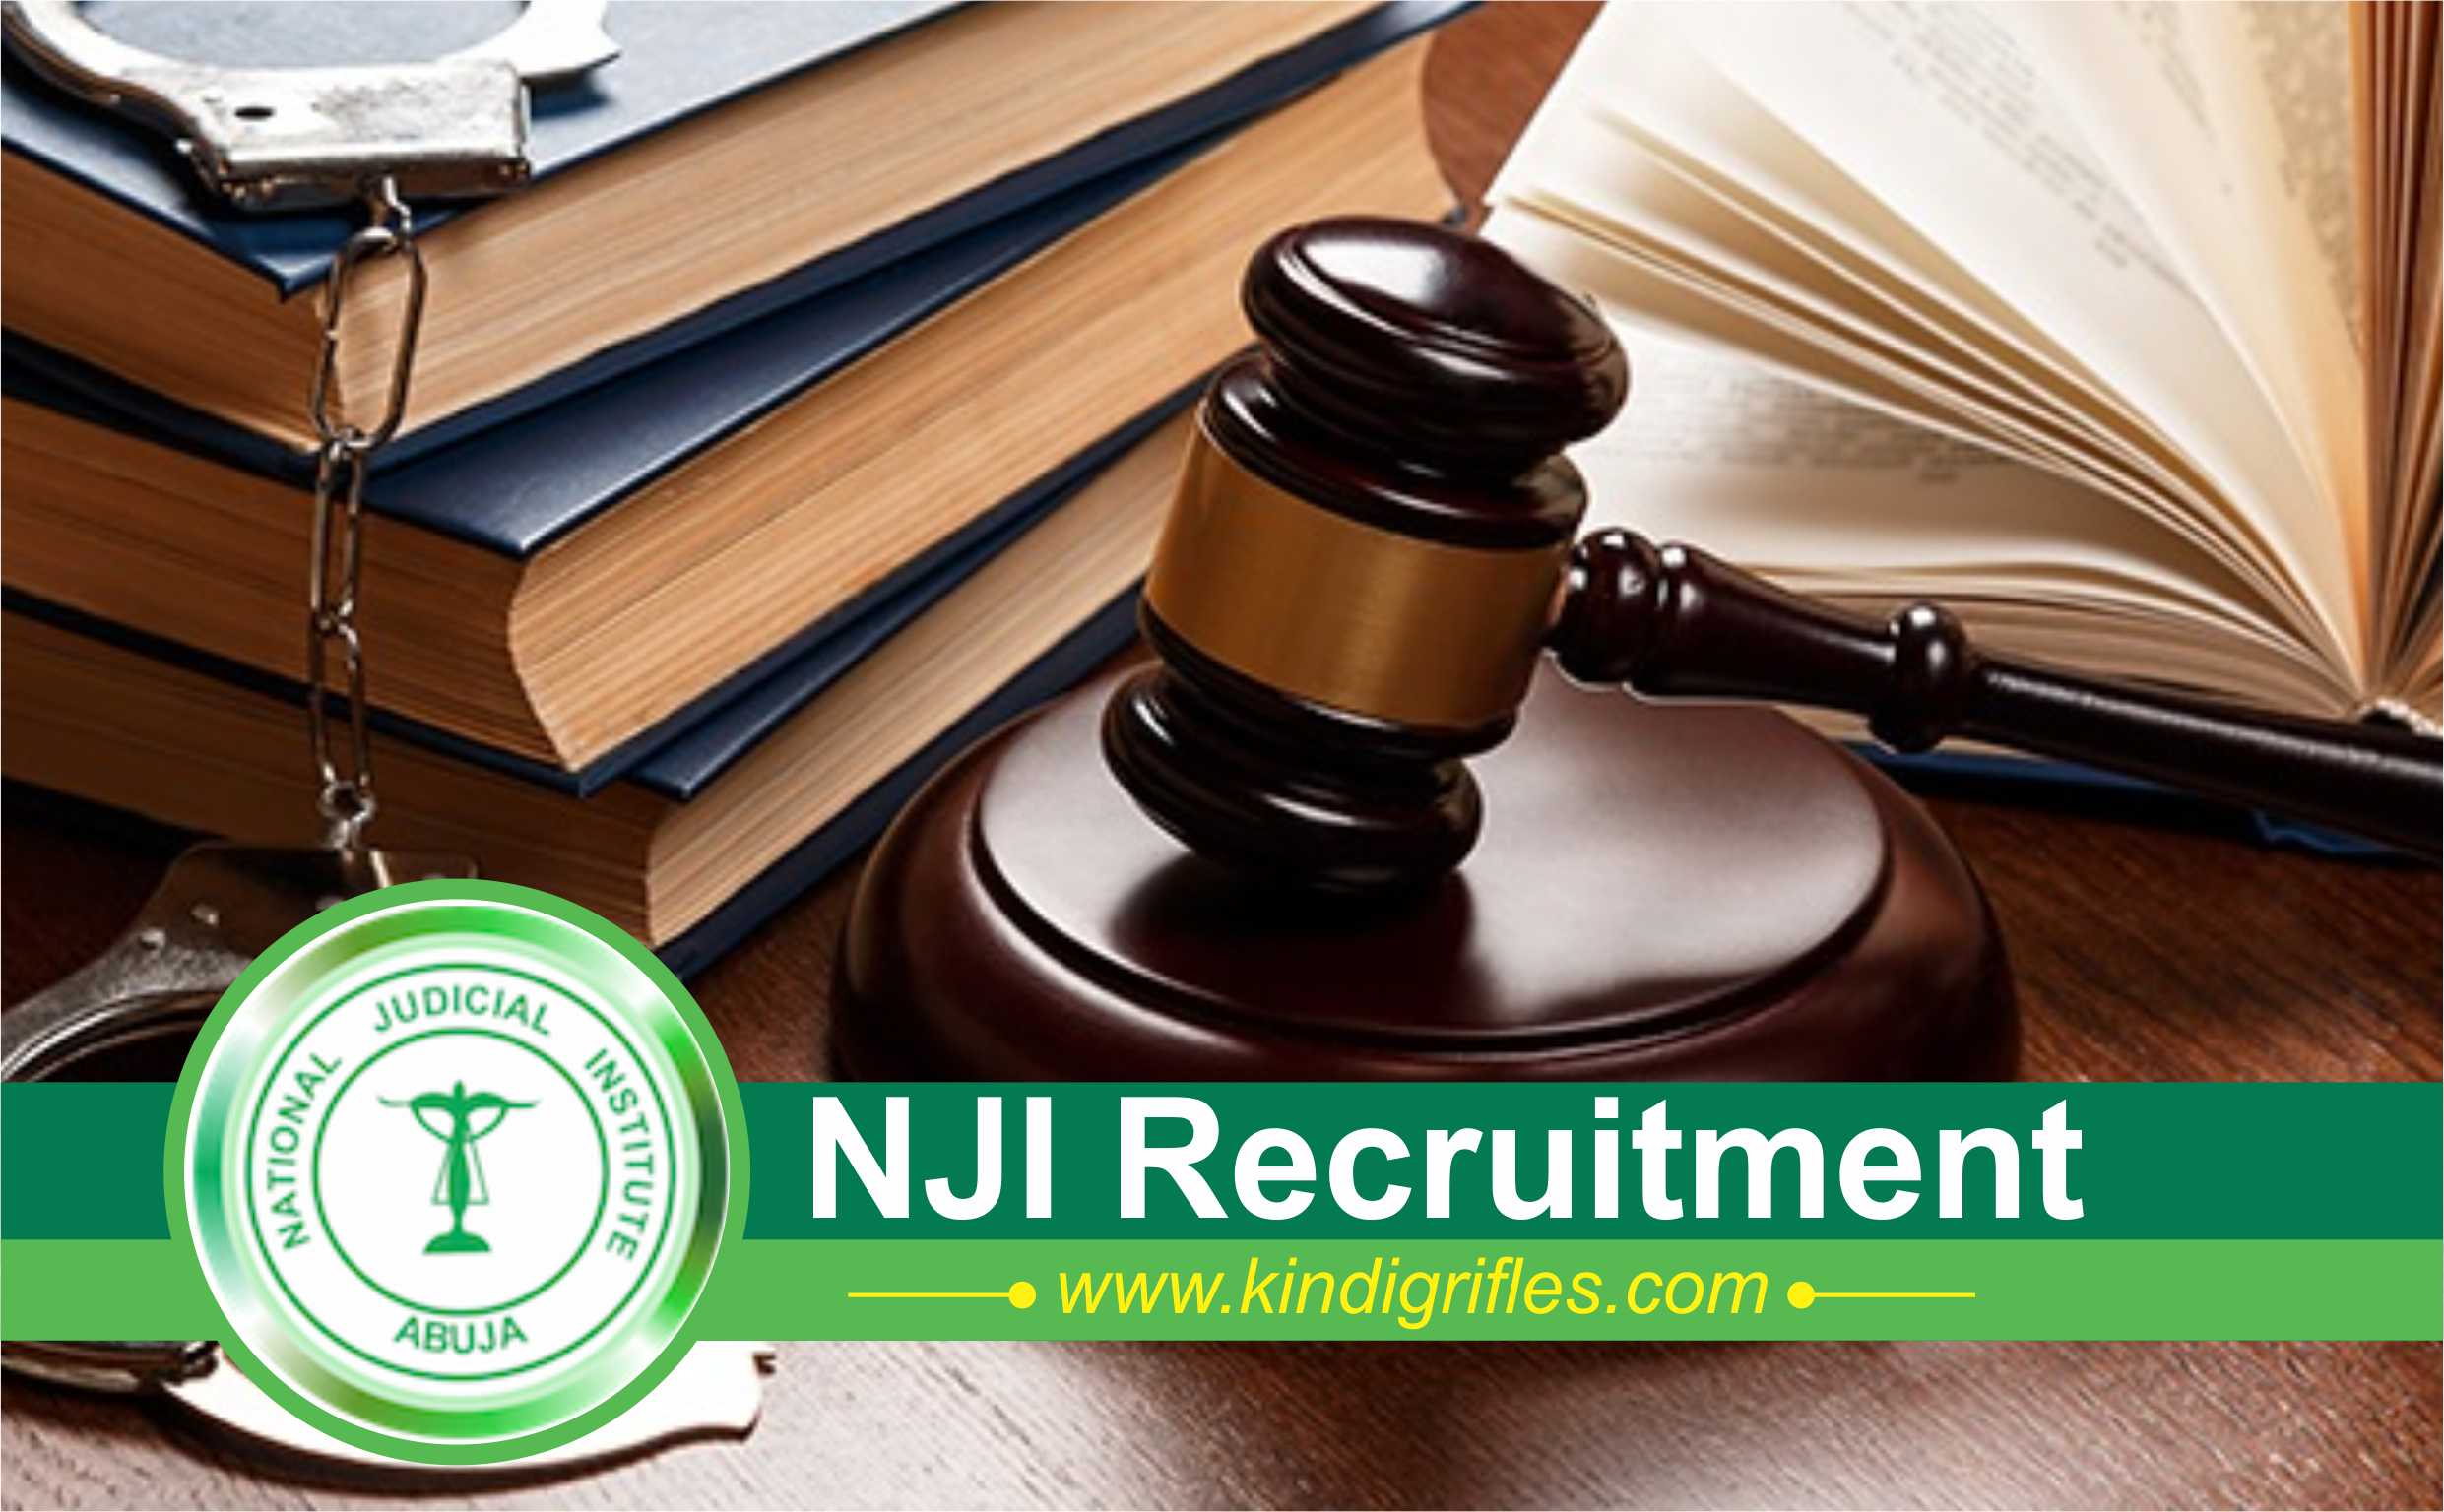 NJI Recruitment